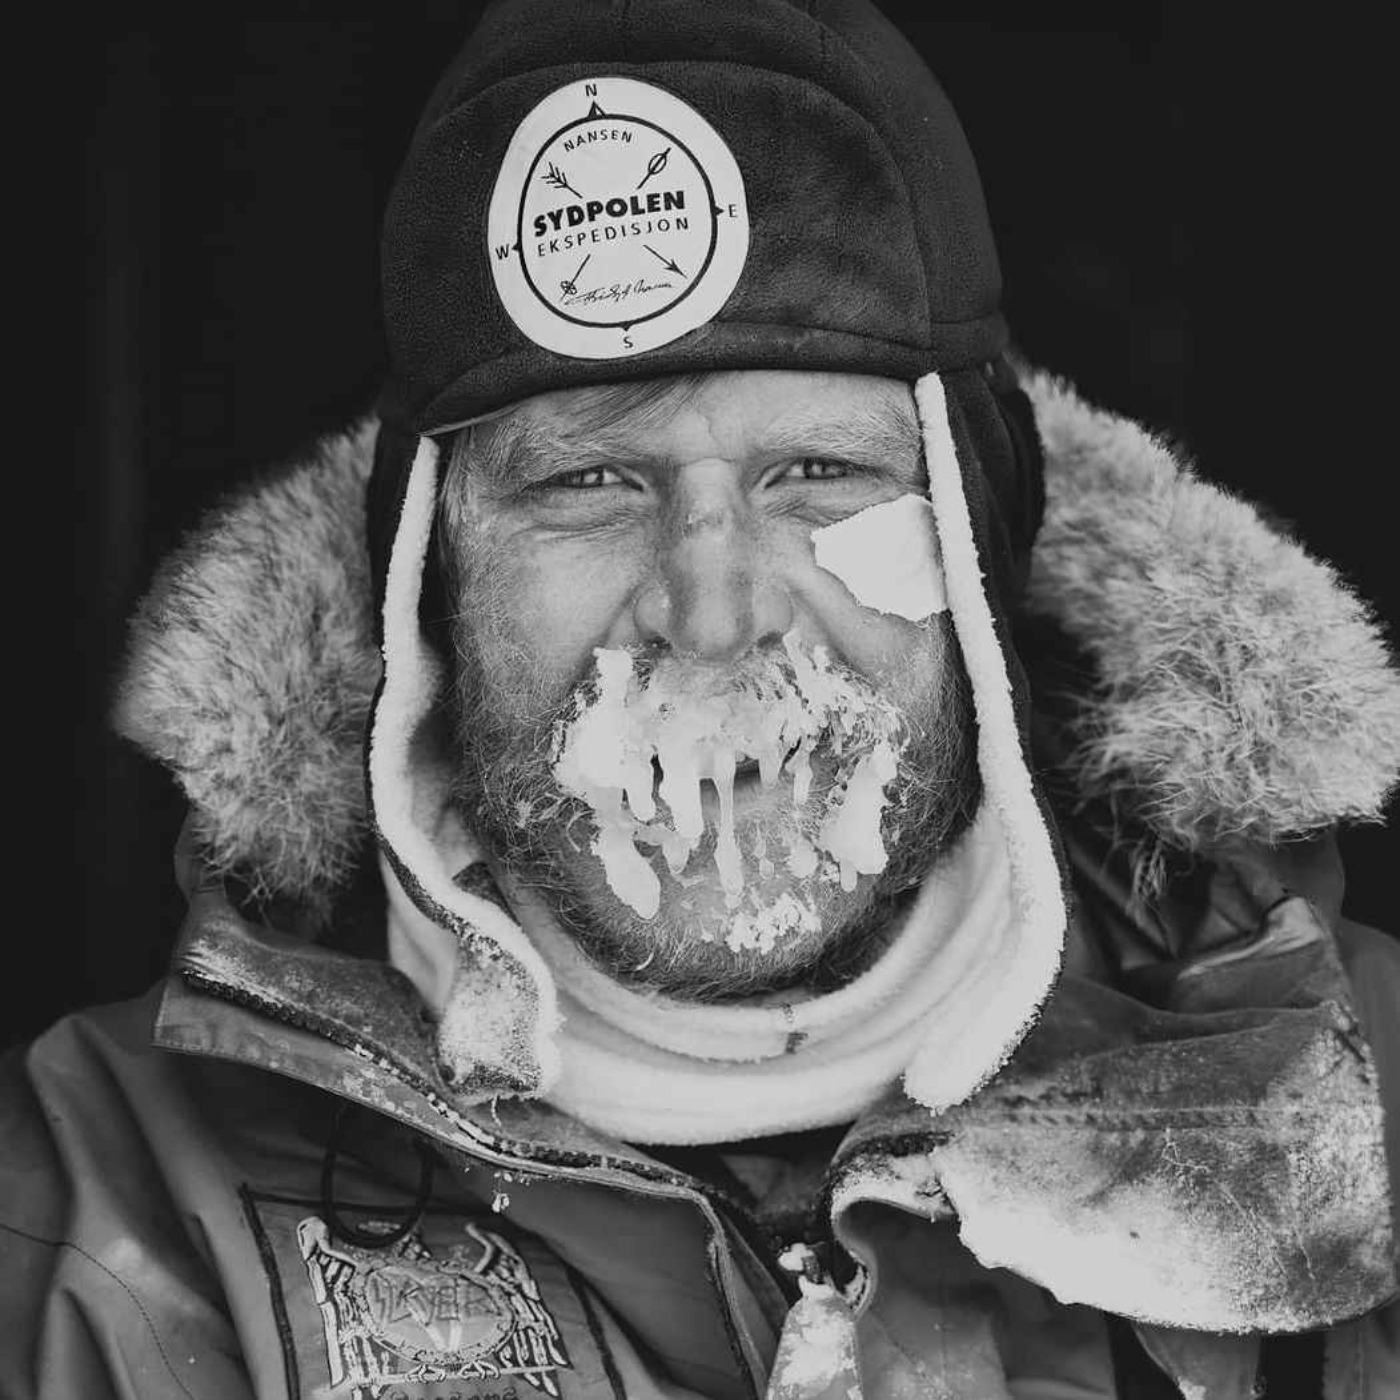 cover art for #36 - AK Glück-Teigland - Rekordforsøk til Sydpolen, spesialdesignet og modifisert utstyr, Toyota Hiace med rattkule, Nansen, tidligere ekspedisjoner++